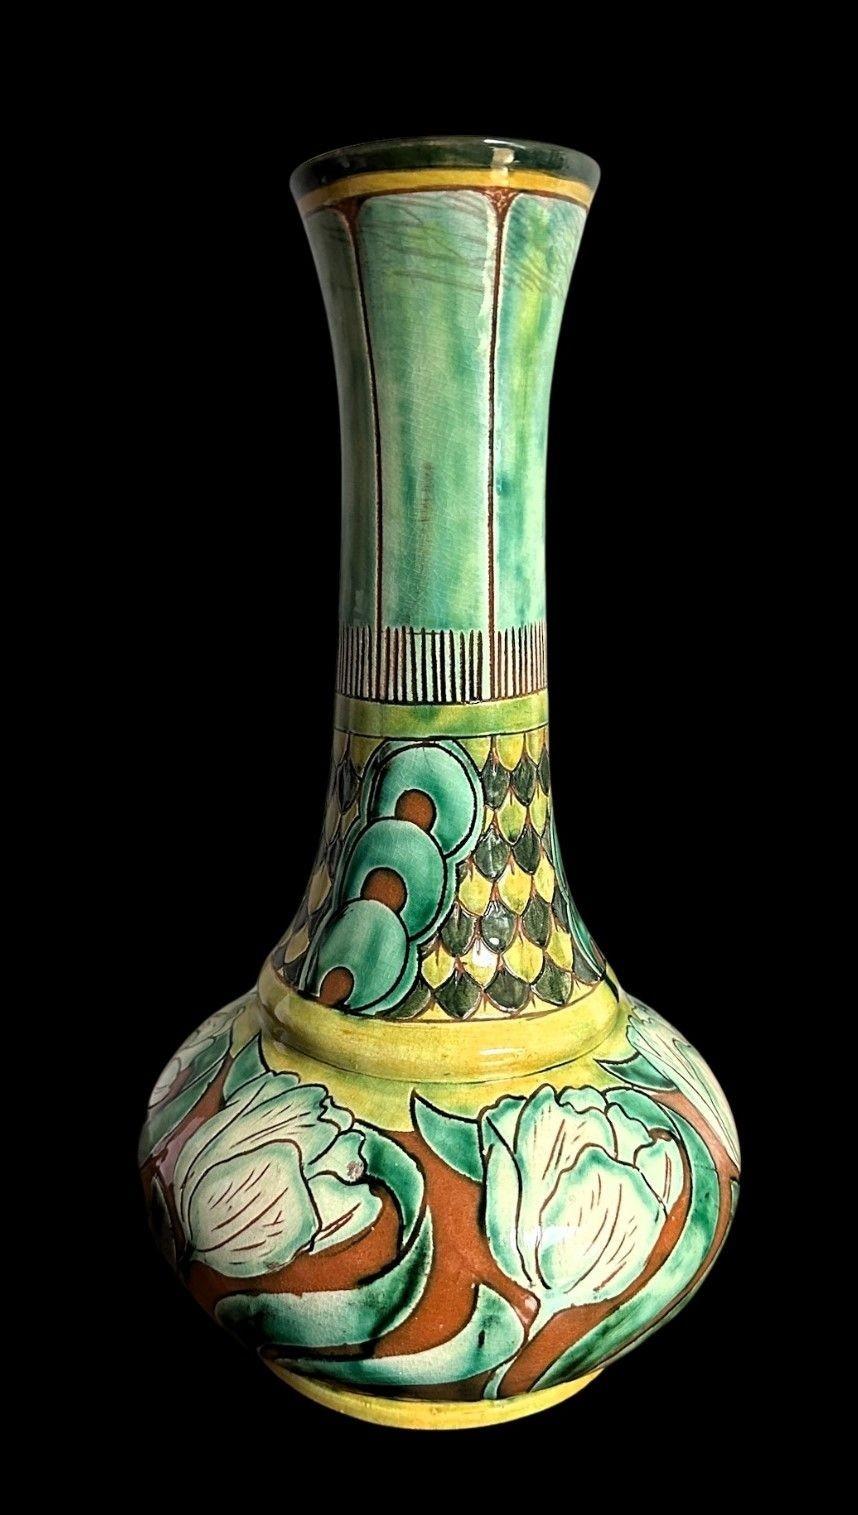 5484
Große Della Robbia-Vase mit Jugendstil-Design aus stilisierten Tulpen unter einem geschwungenen Hals von Charles Collis
Leichte Risse und Flecken auf dem Hals und eine Glasurfritte auf dem Körper
32cm hoch, 16cm breit
CIRCA 1900